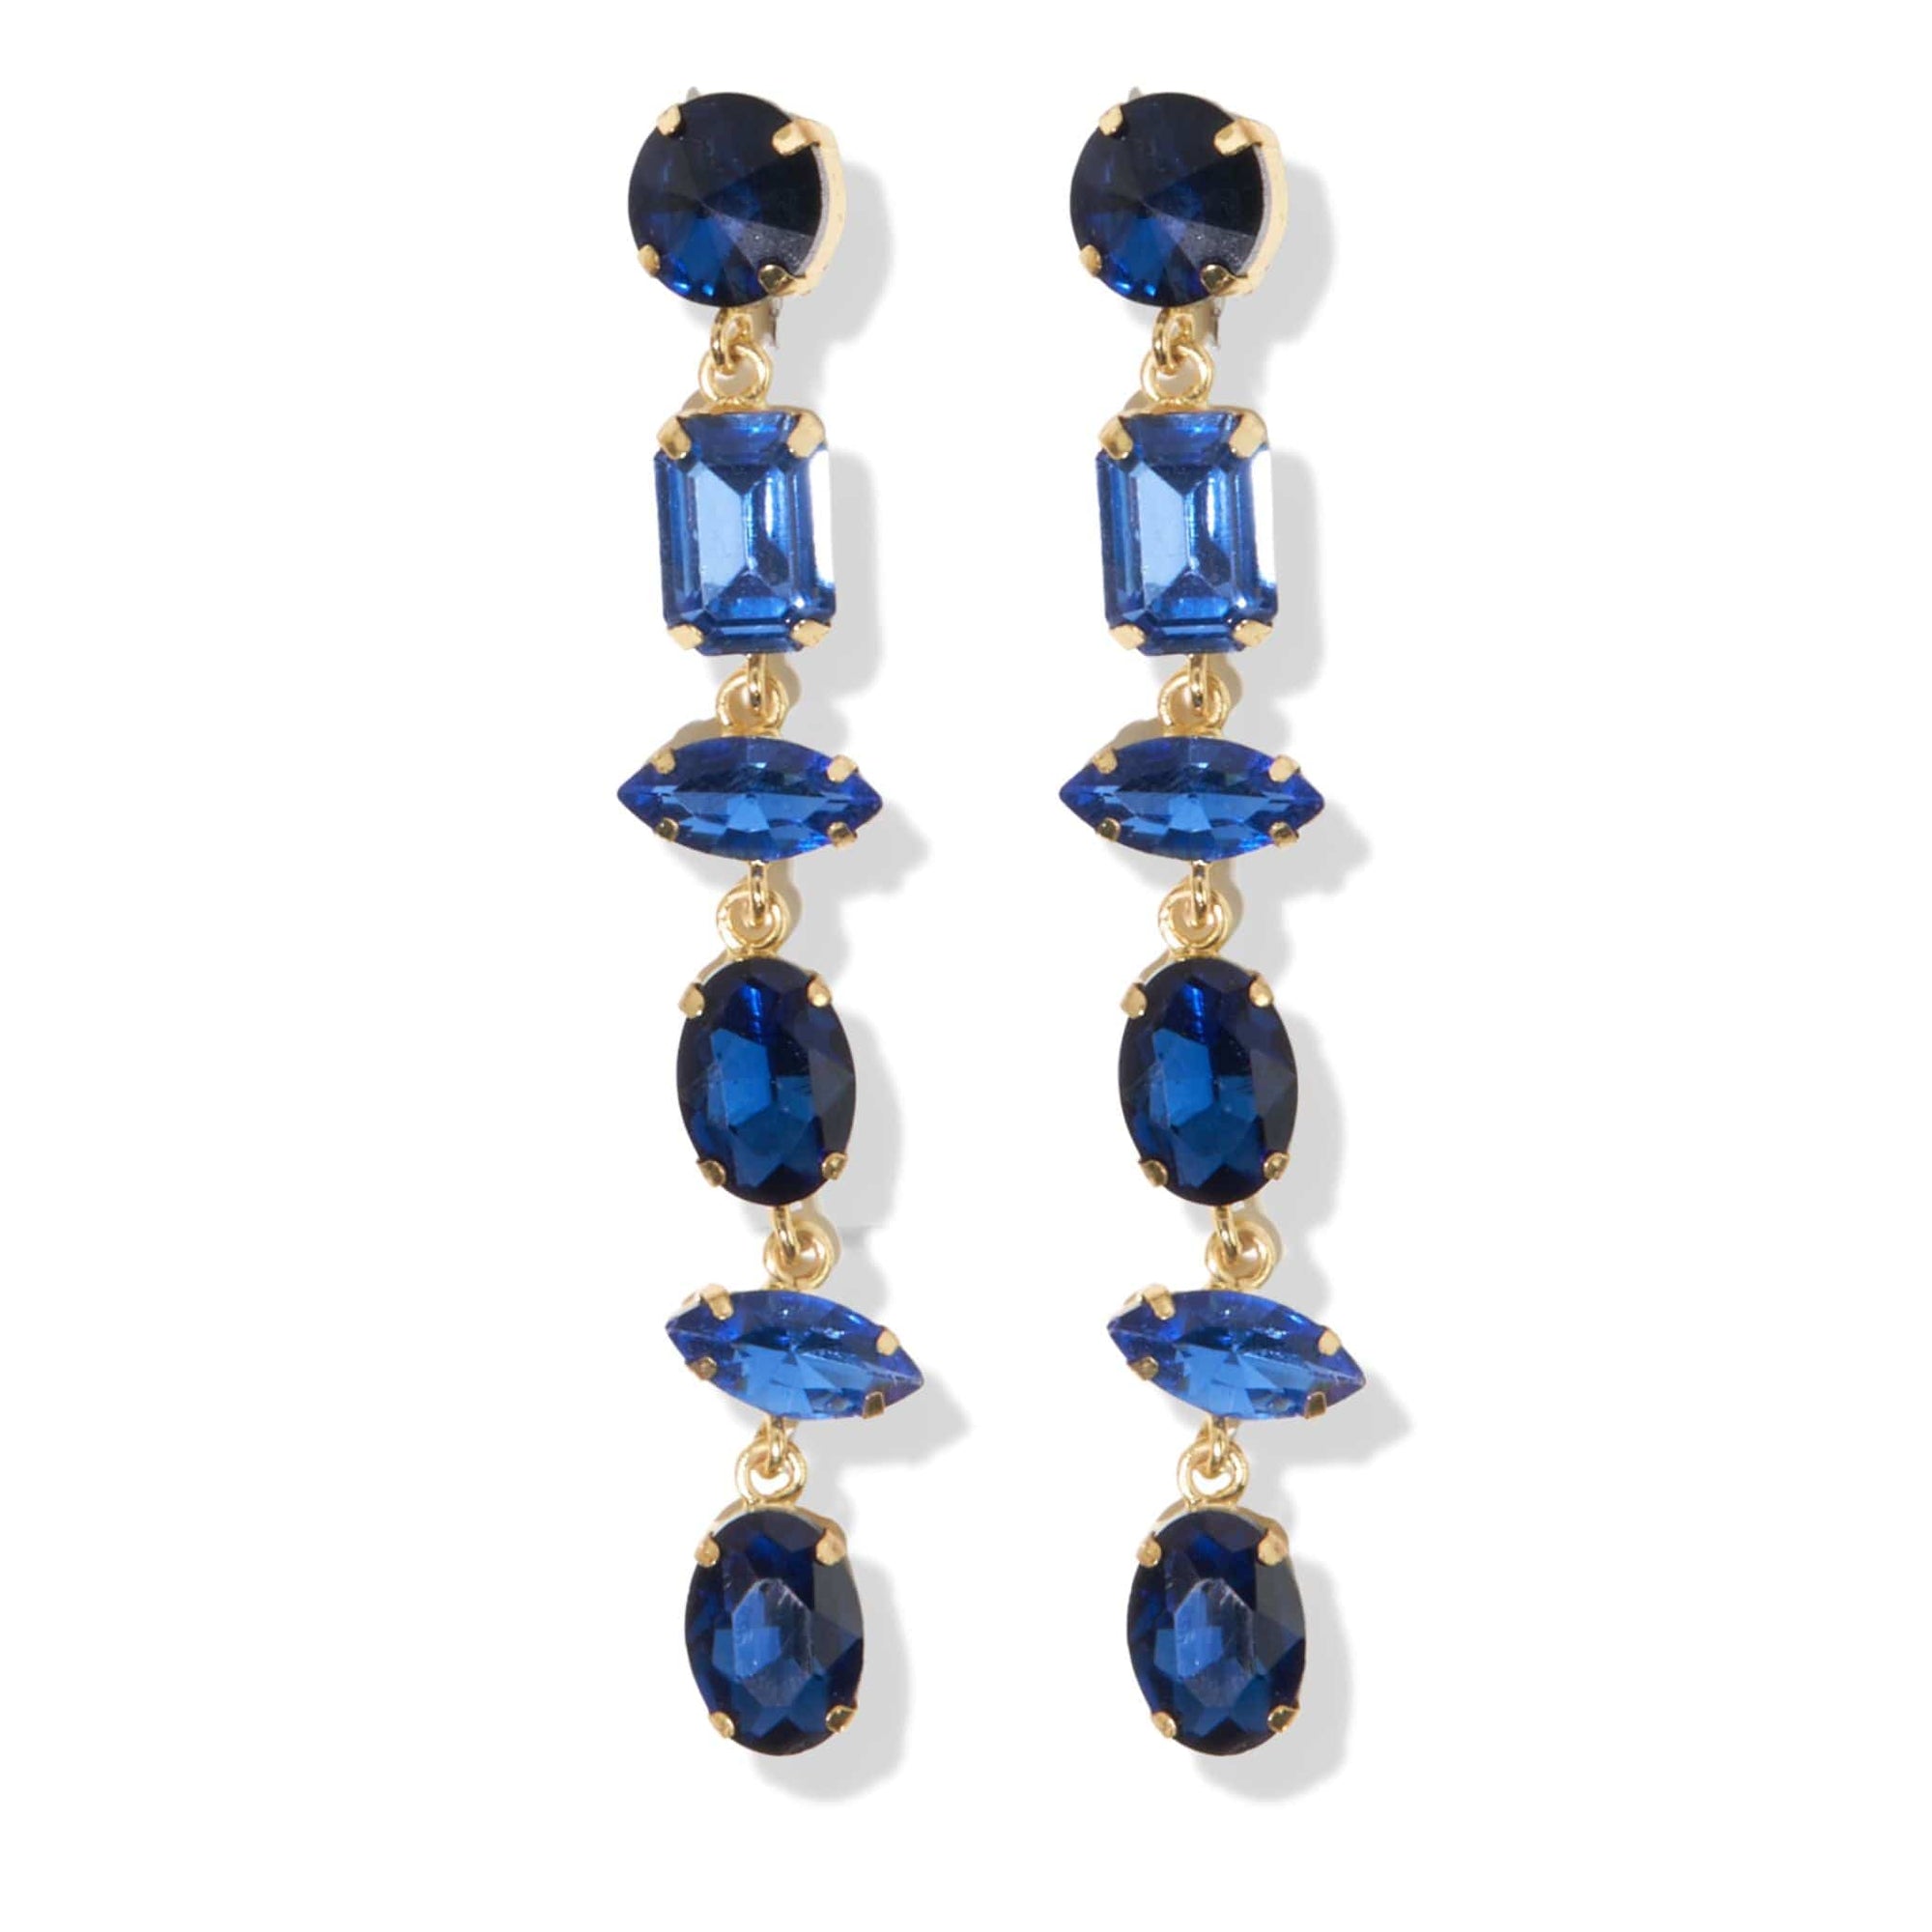 6 Tier Crystal Post Earrings 3.75"